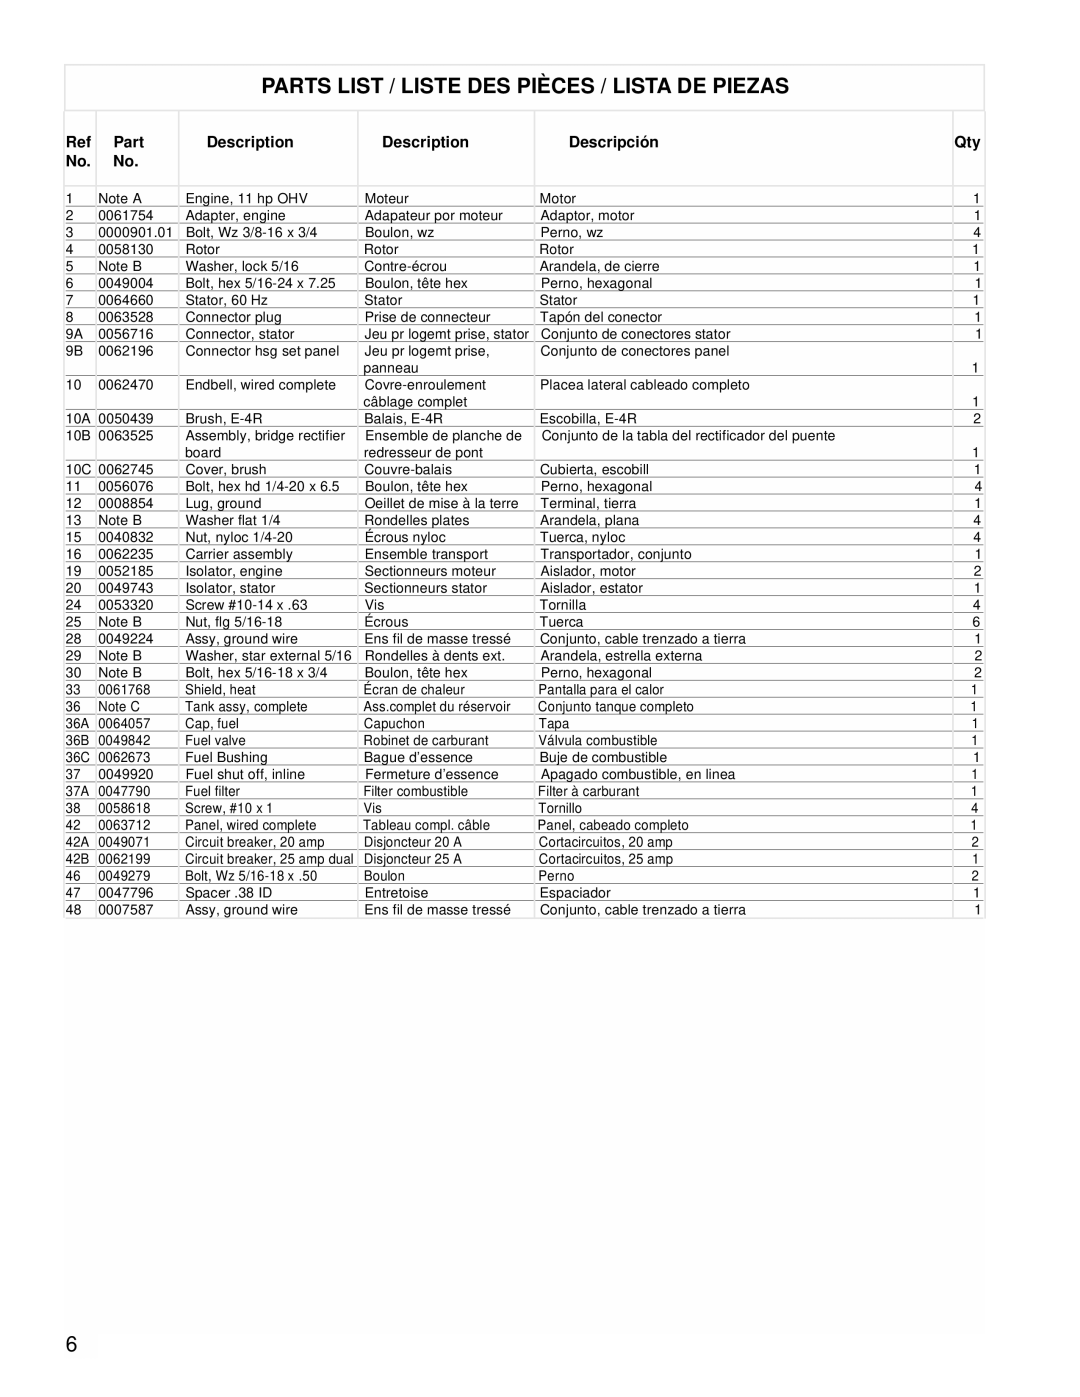 Powermate PMC525300 manual Parts List / Liste Des Pièces / Lista De Piezas, Circuit breaker, 25 amp dual 